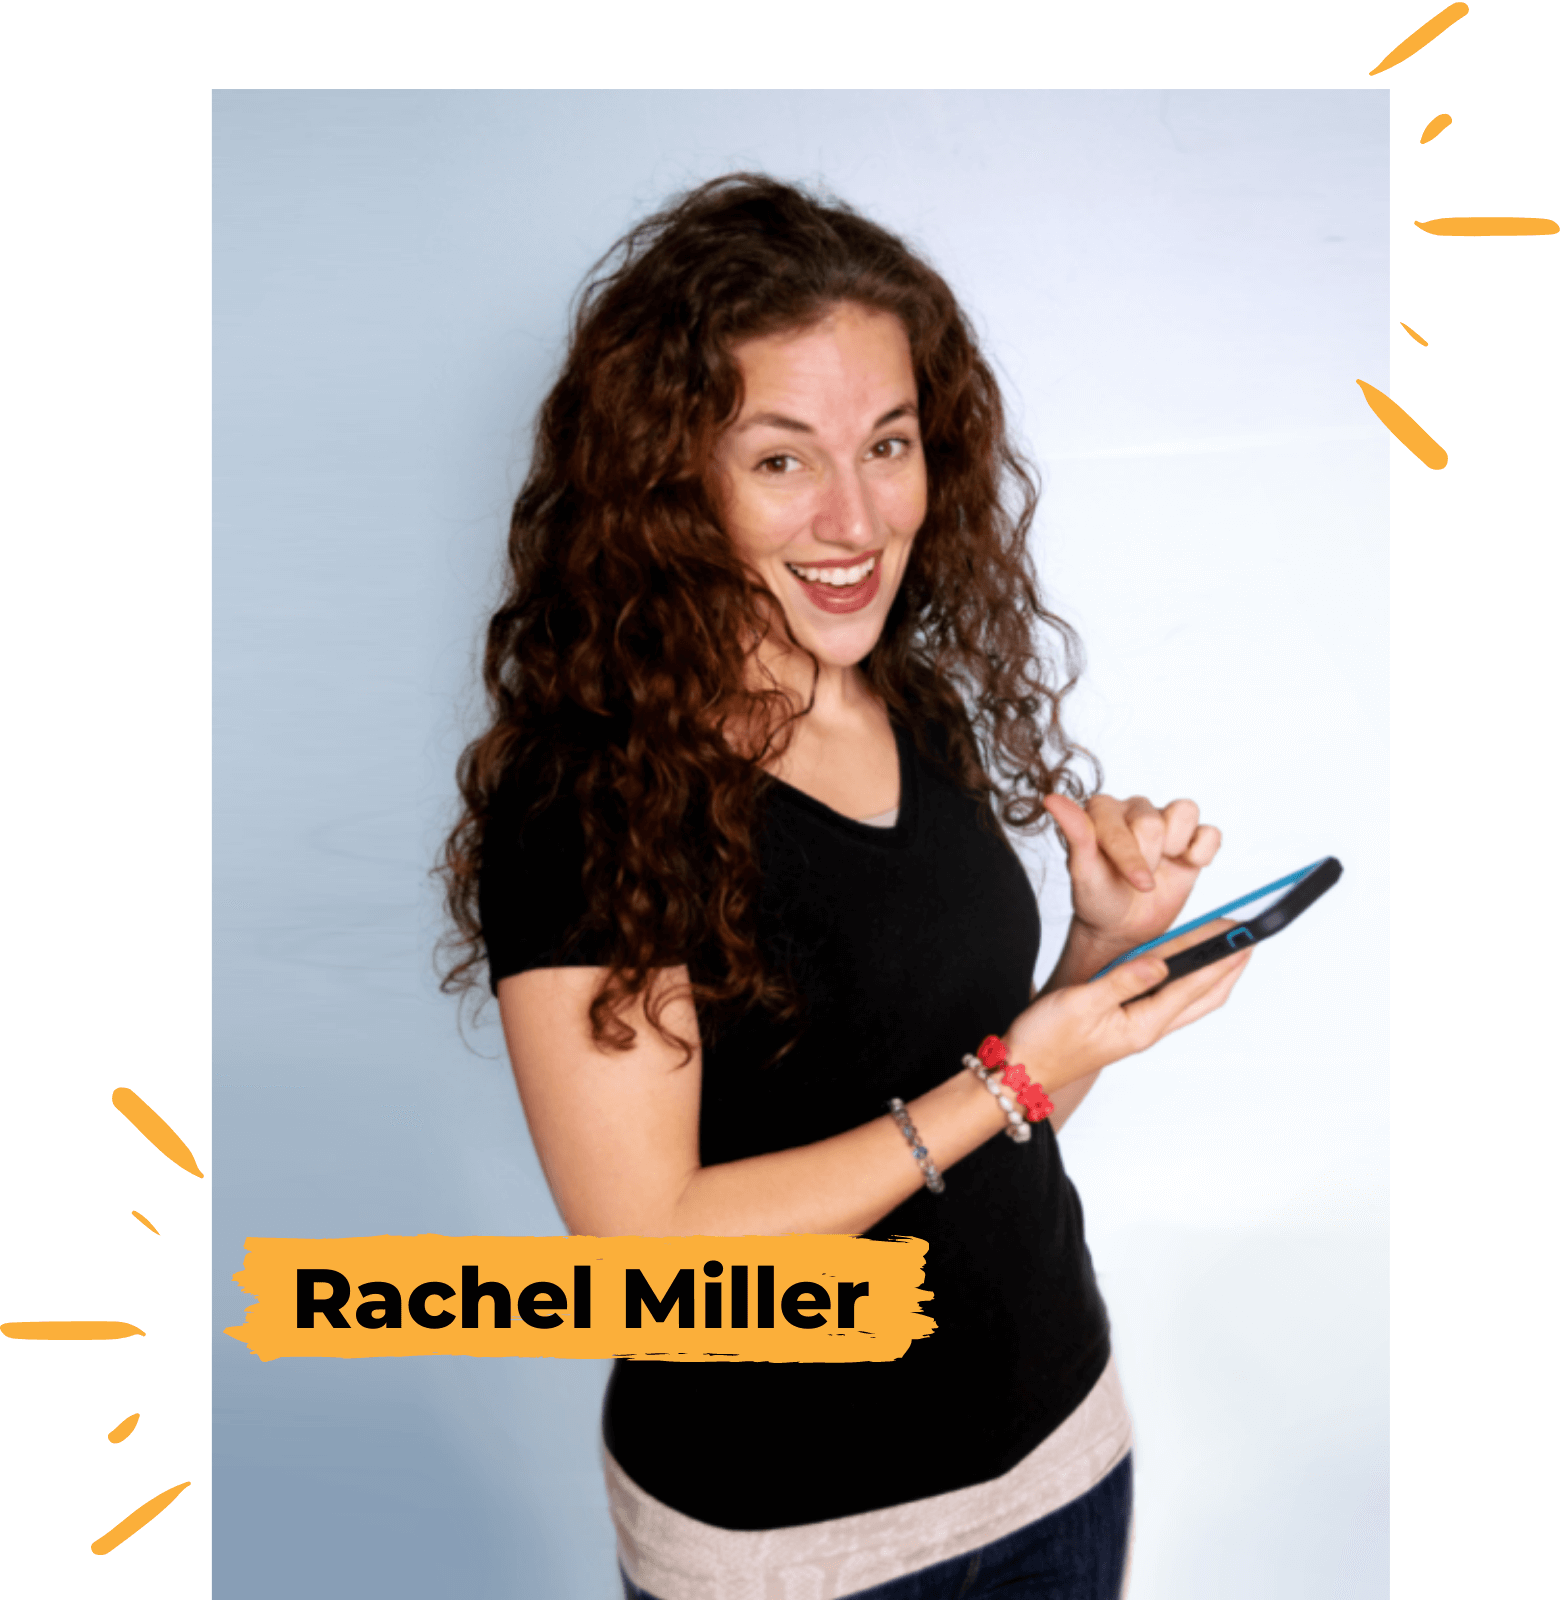 Rachel Miller